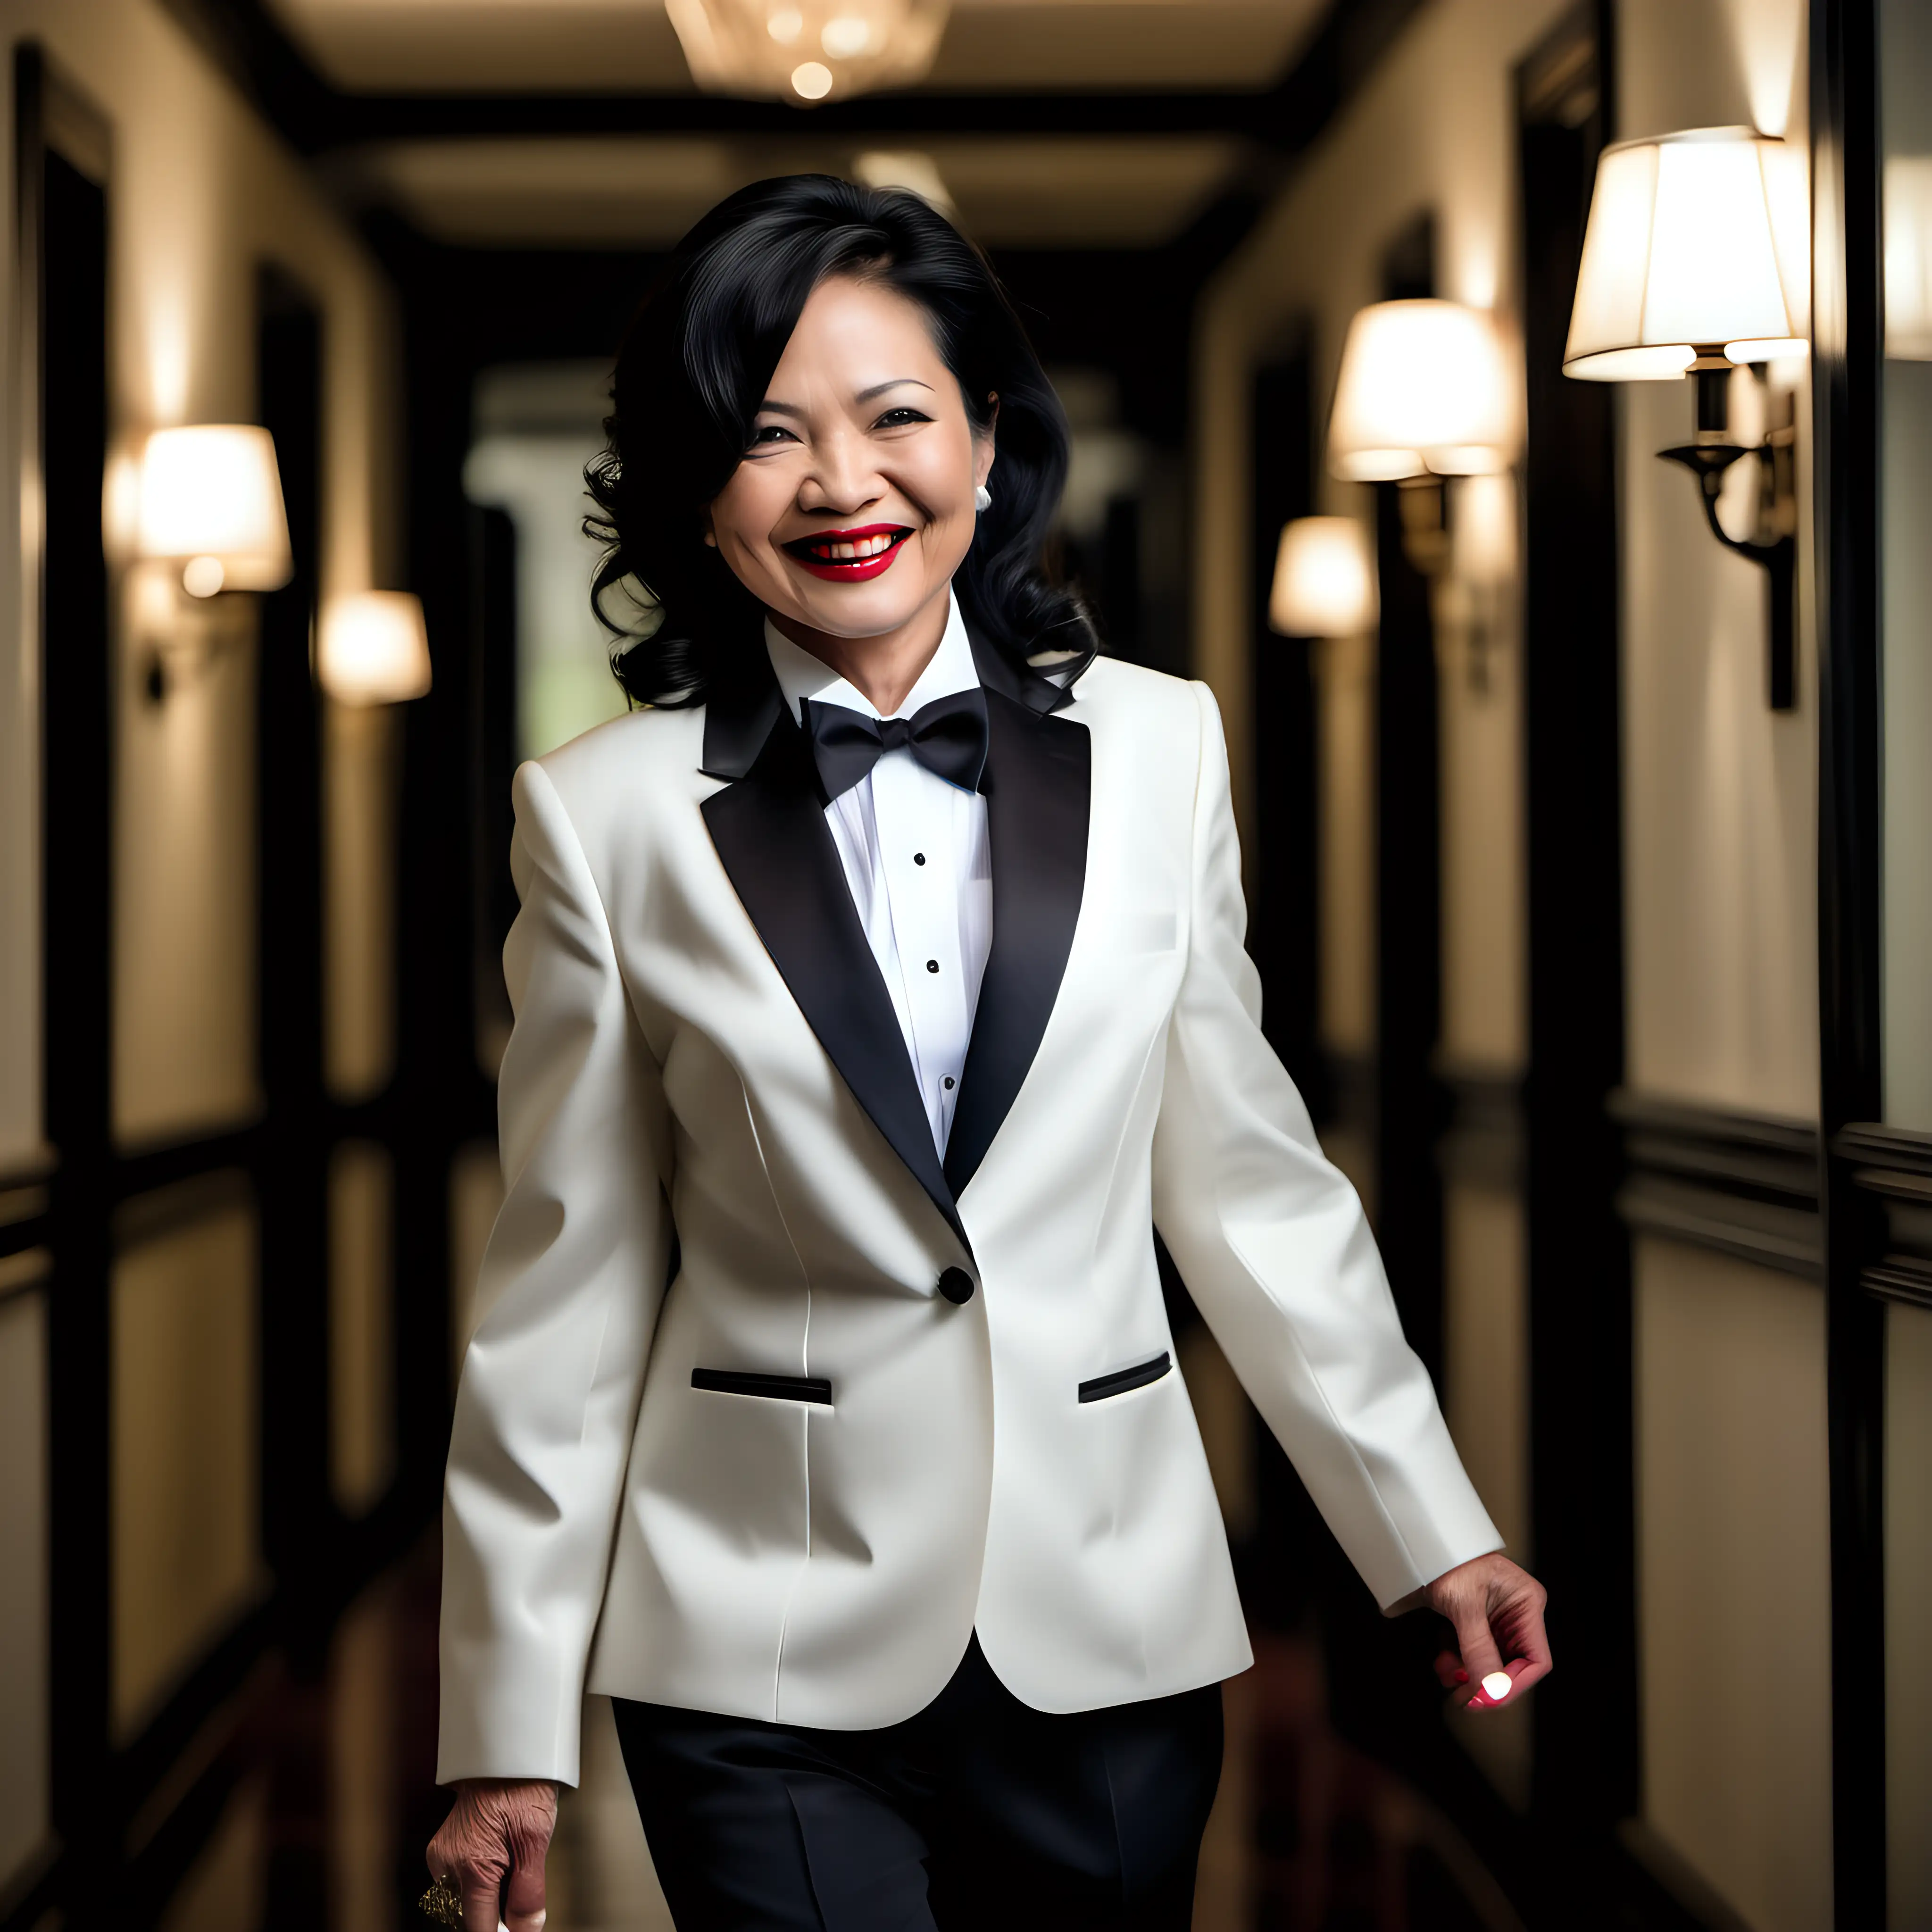 Elegant-Vietnamese-Woman-in-Ivory-Dinner-Jacket-Walking-Down-Mansion-Hallway